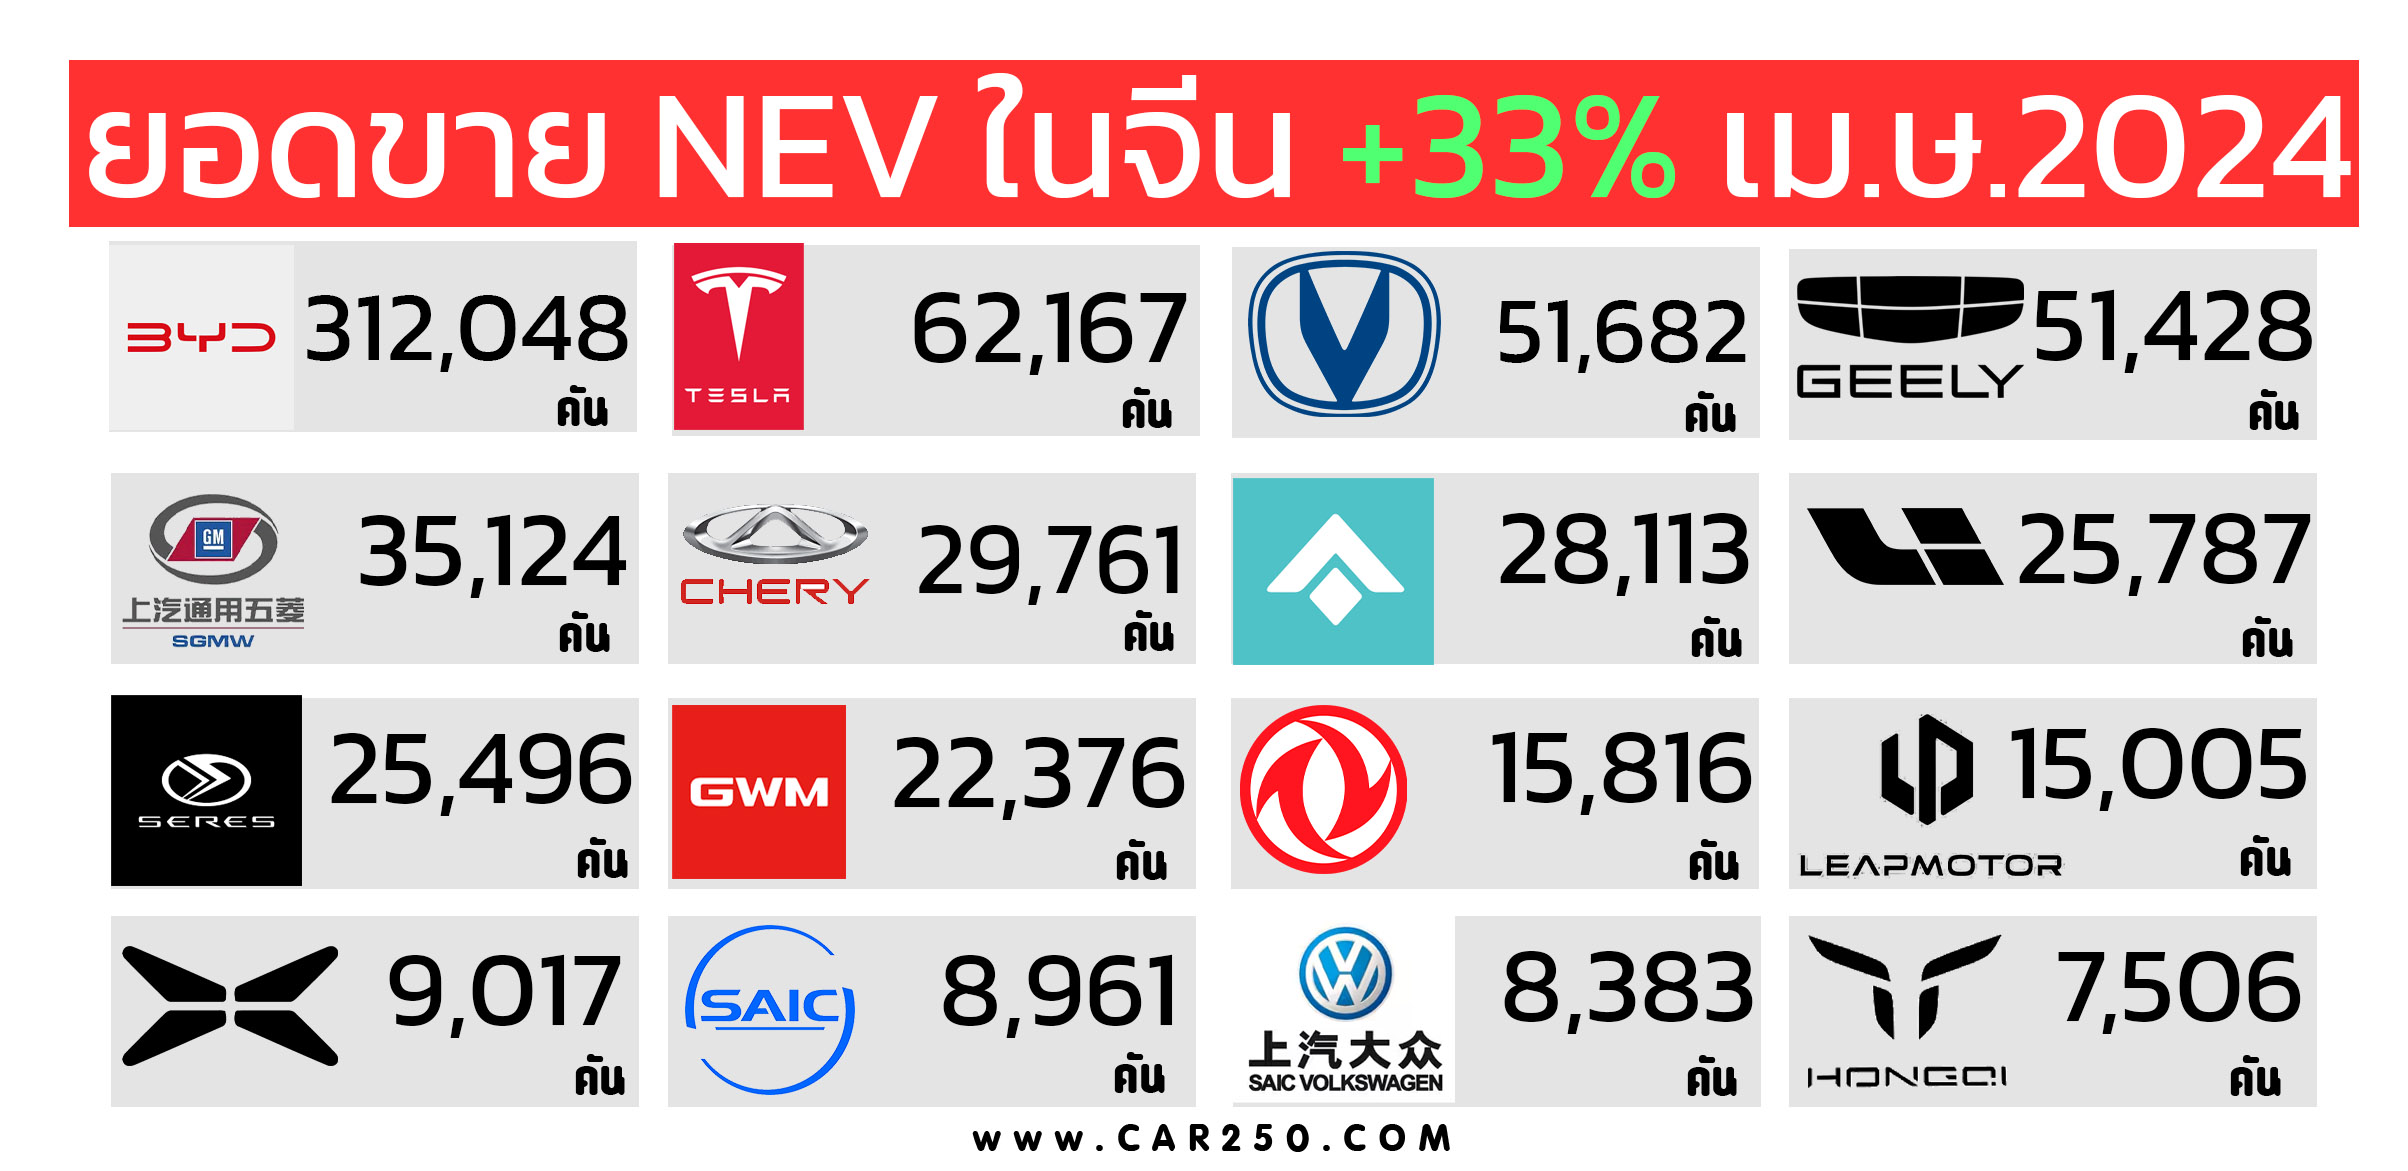 รถยนต์พลังงานใหม่ NEV มียอดขาย 800,000 คันในจีนเพิ่มขึ้น 33% เมื่อเทียบรายปี